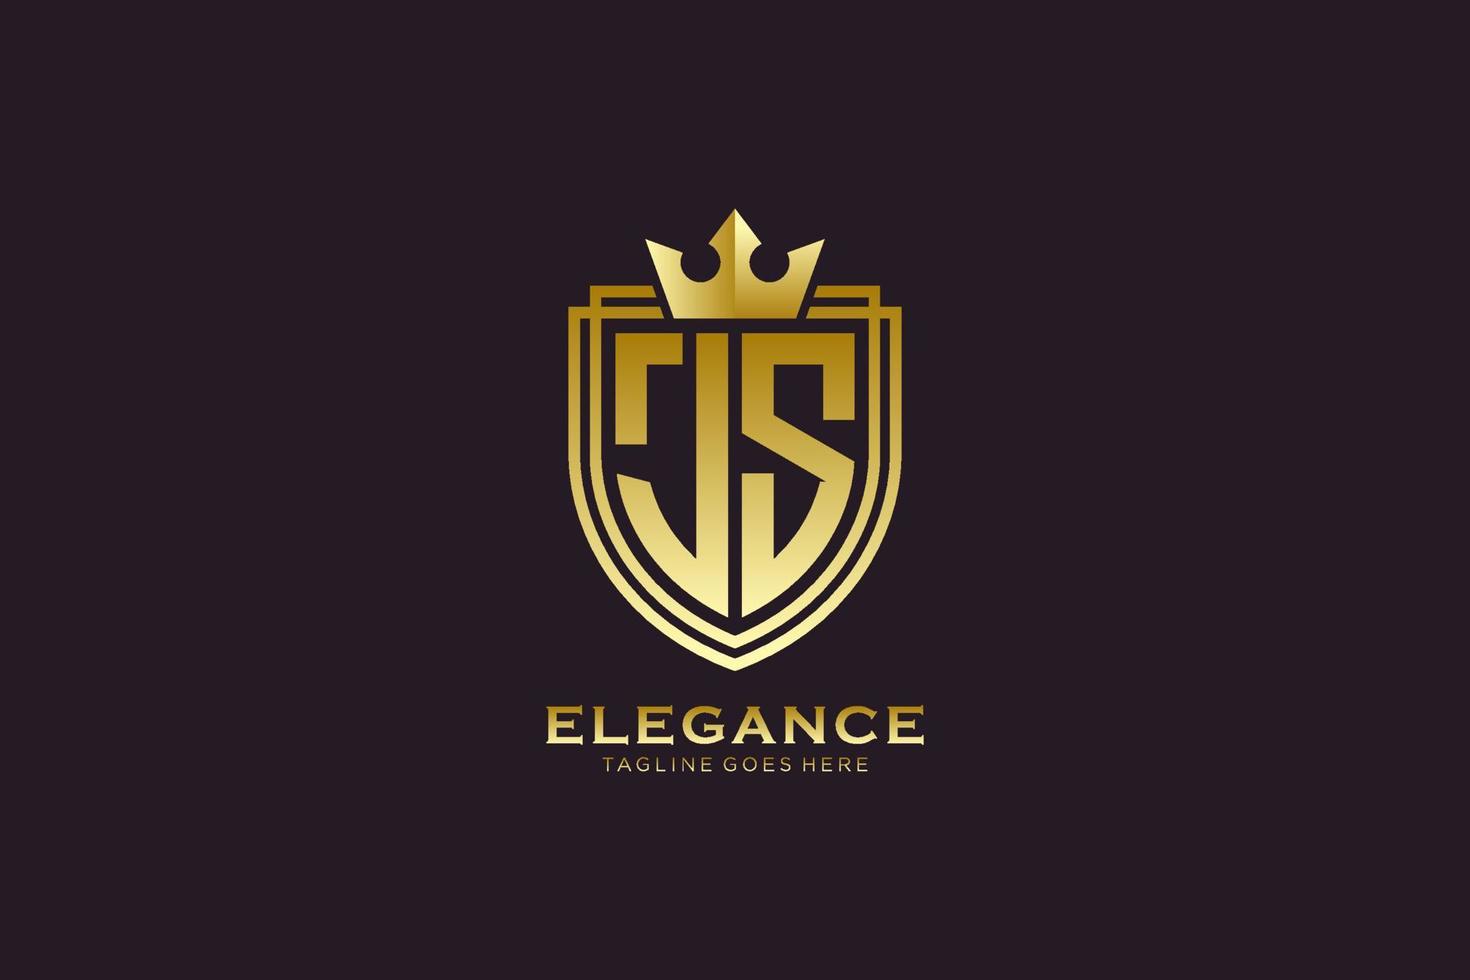 logo monogramme de luxe élégant initial js ou modèle de badge avec volutes et couronne royale - parfait pour les projets de marque de luxe vecteur